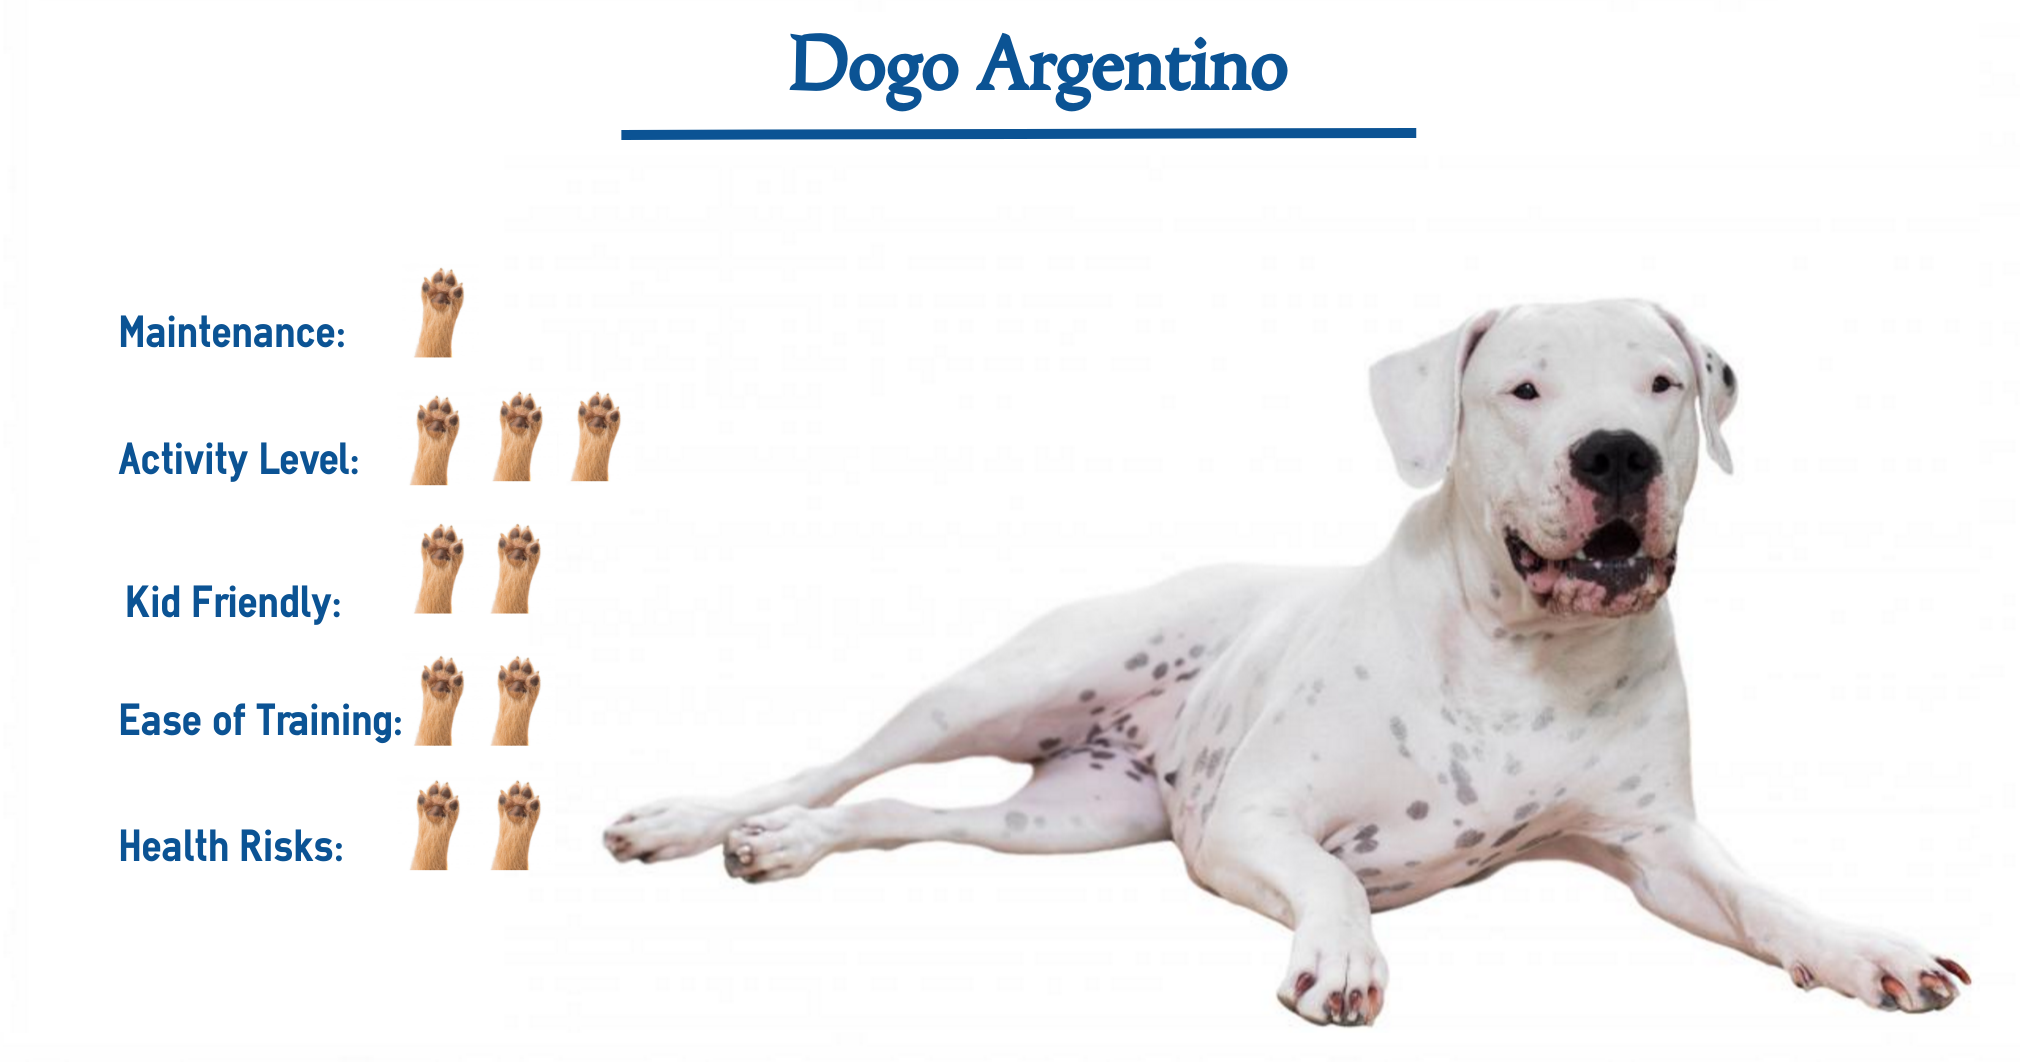 Dogo Argentino dog breed